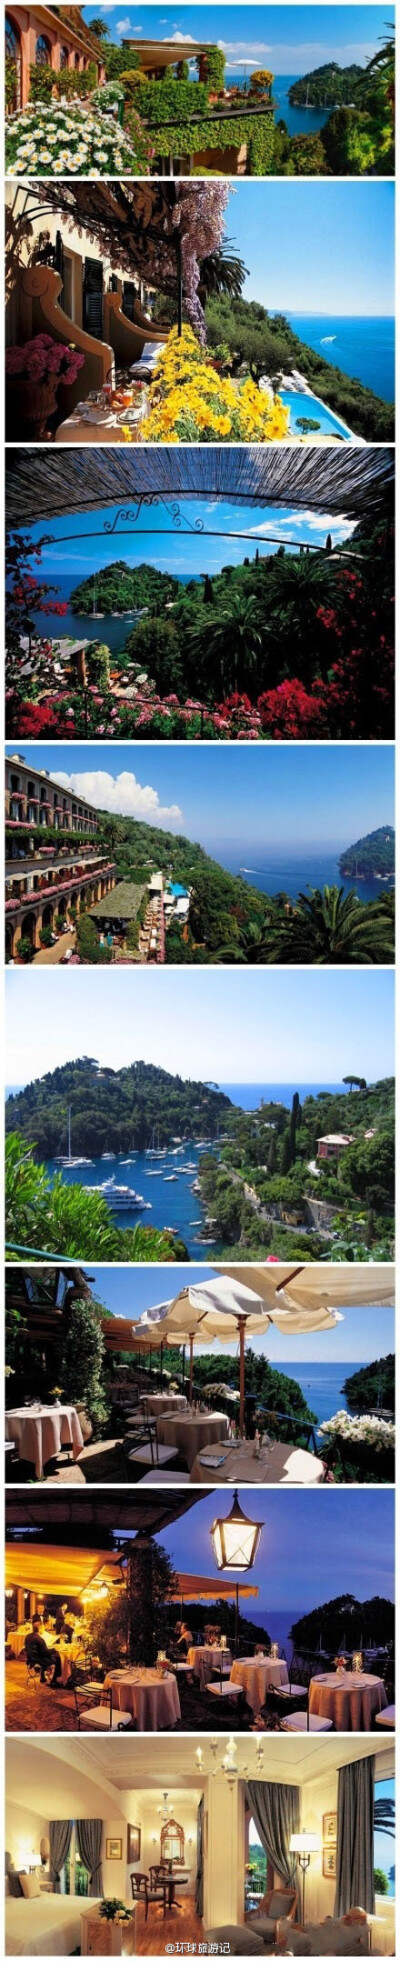 【瑰丽欧罗巴】蜜月，或者私奔，怎么都行，让我们一起奔向开满鲜花、白帆点点的地中海吧！这里是意大利的Portofino，号称地中海第一小镇。